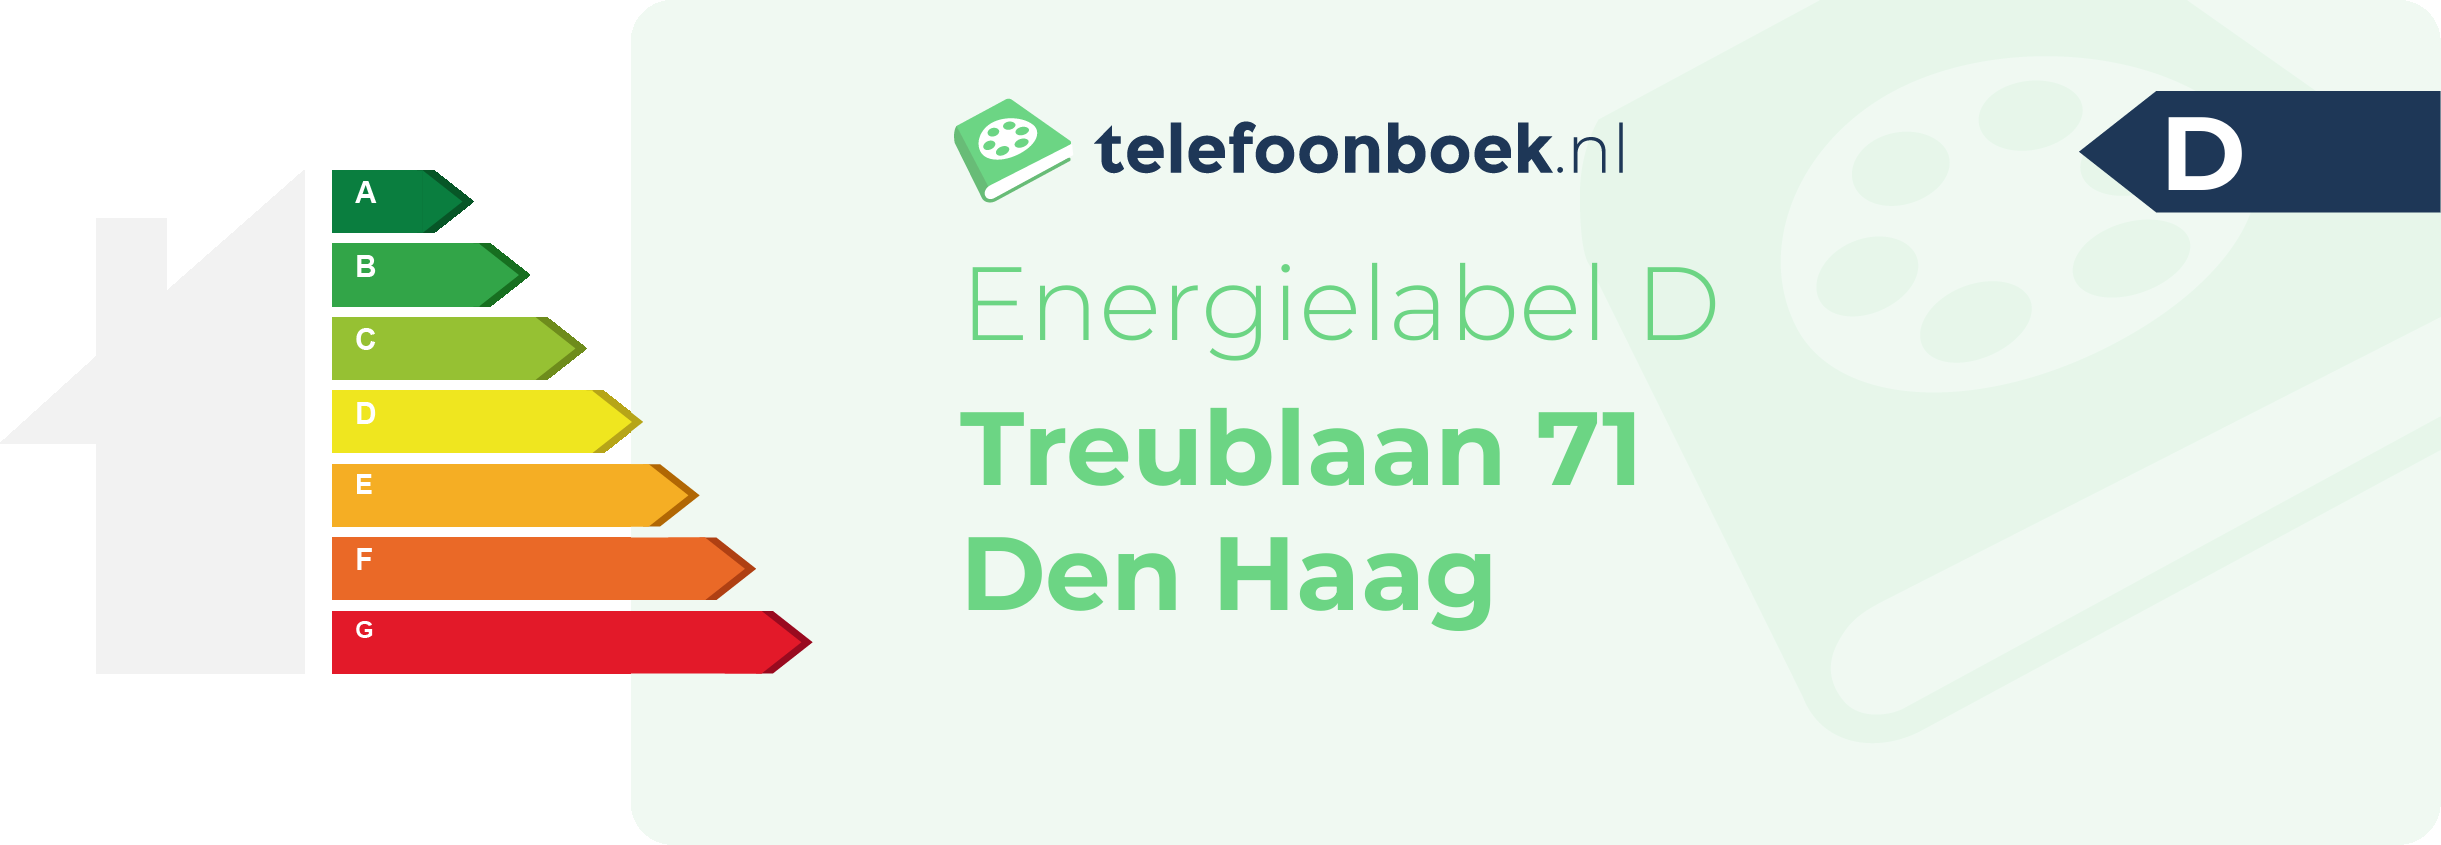 Energielabel Treublaan 71 Den Haag